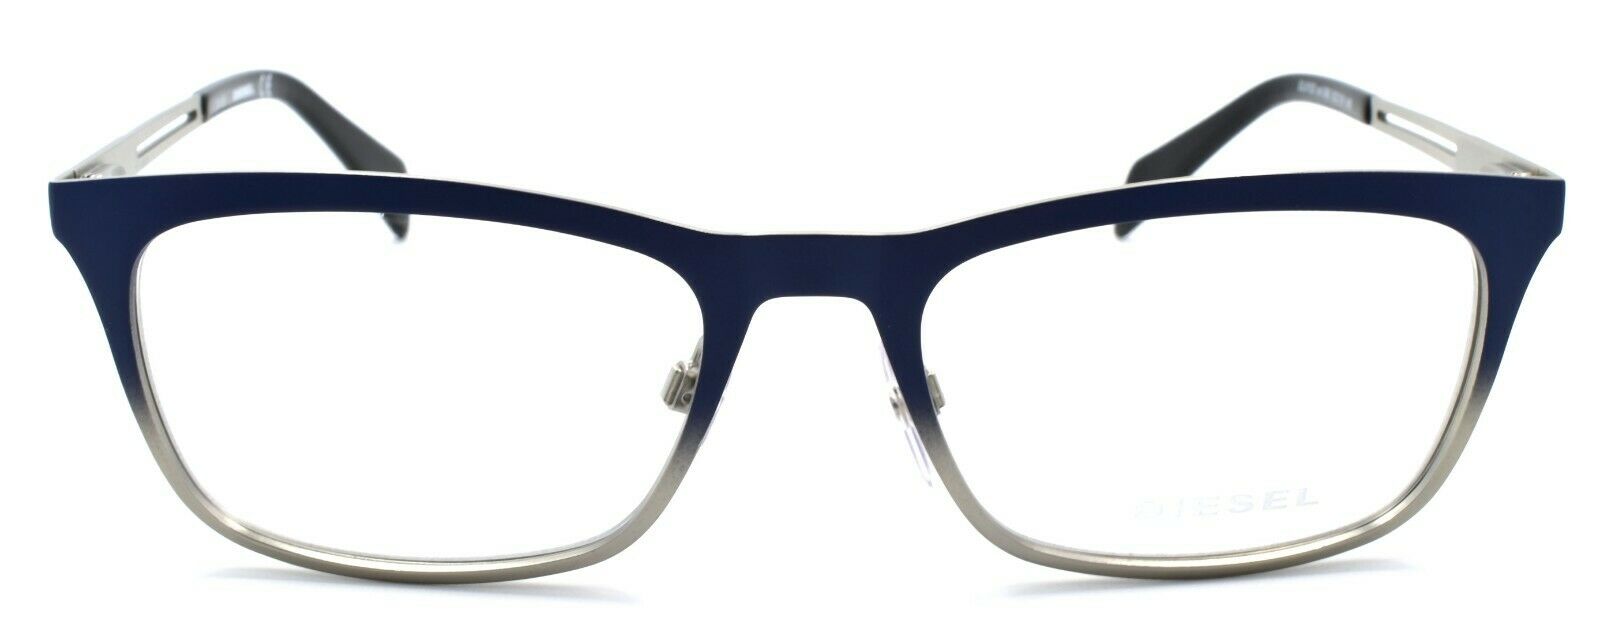 2-Diesel DL5122 092 Men's Eyeglasses Frames 53-18-145 Matte Blue / Silver-664689687367-IKSpecs